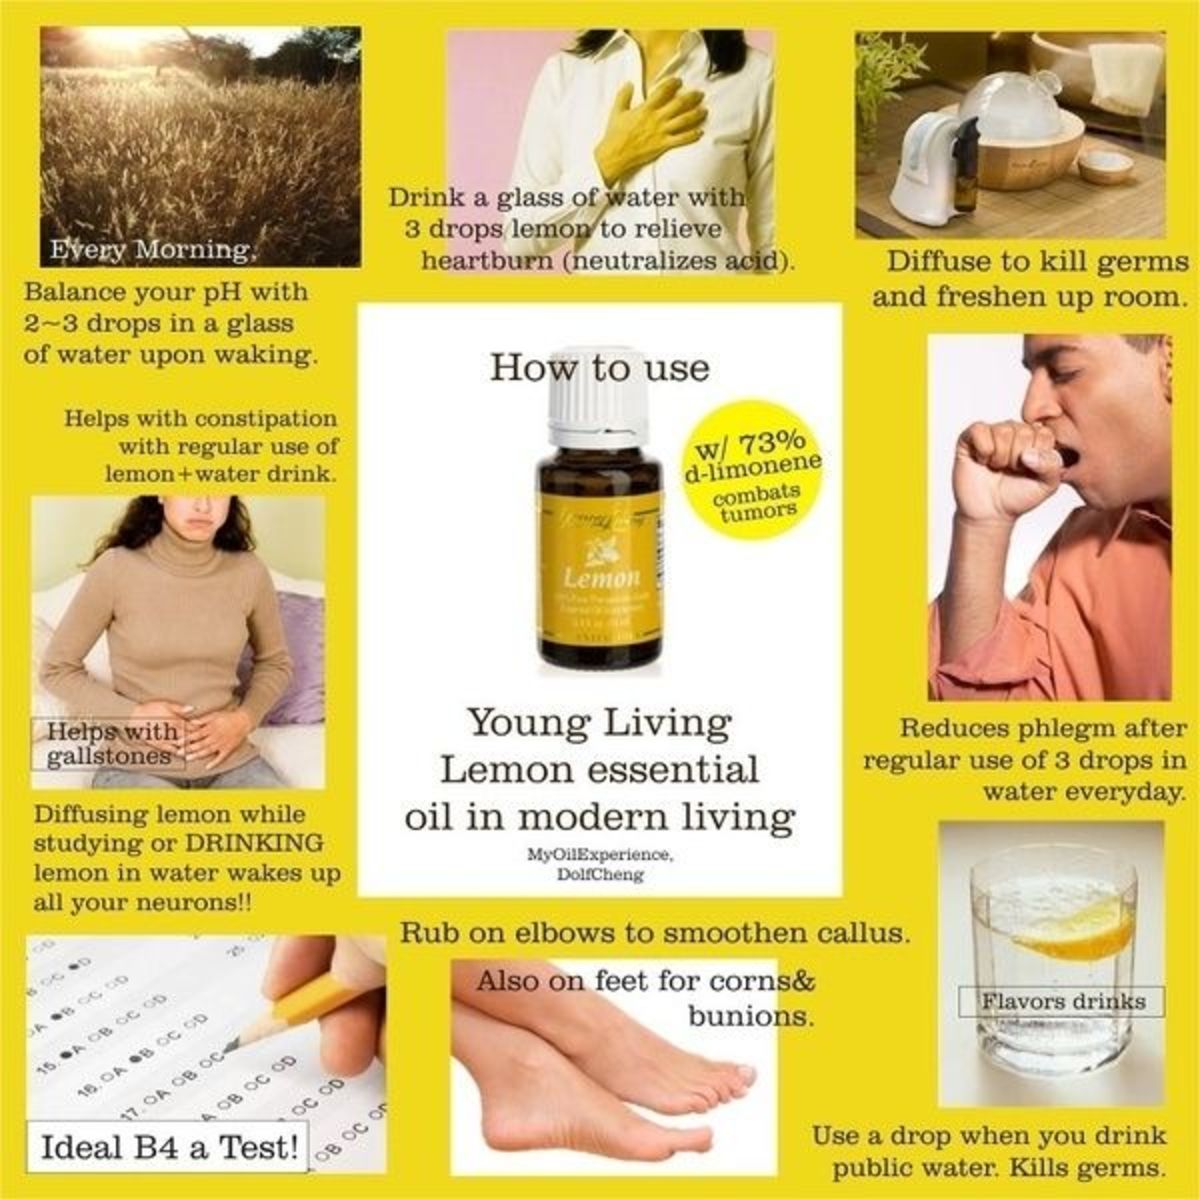 Lemon Essential Oil Uses